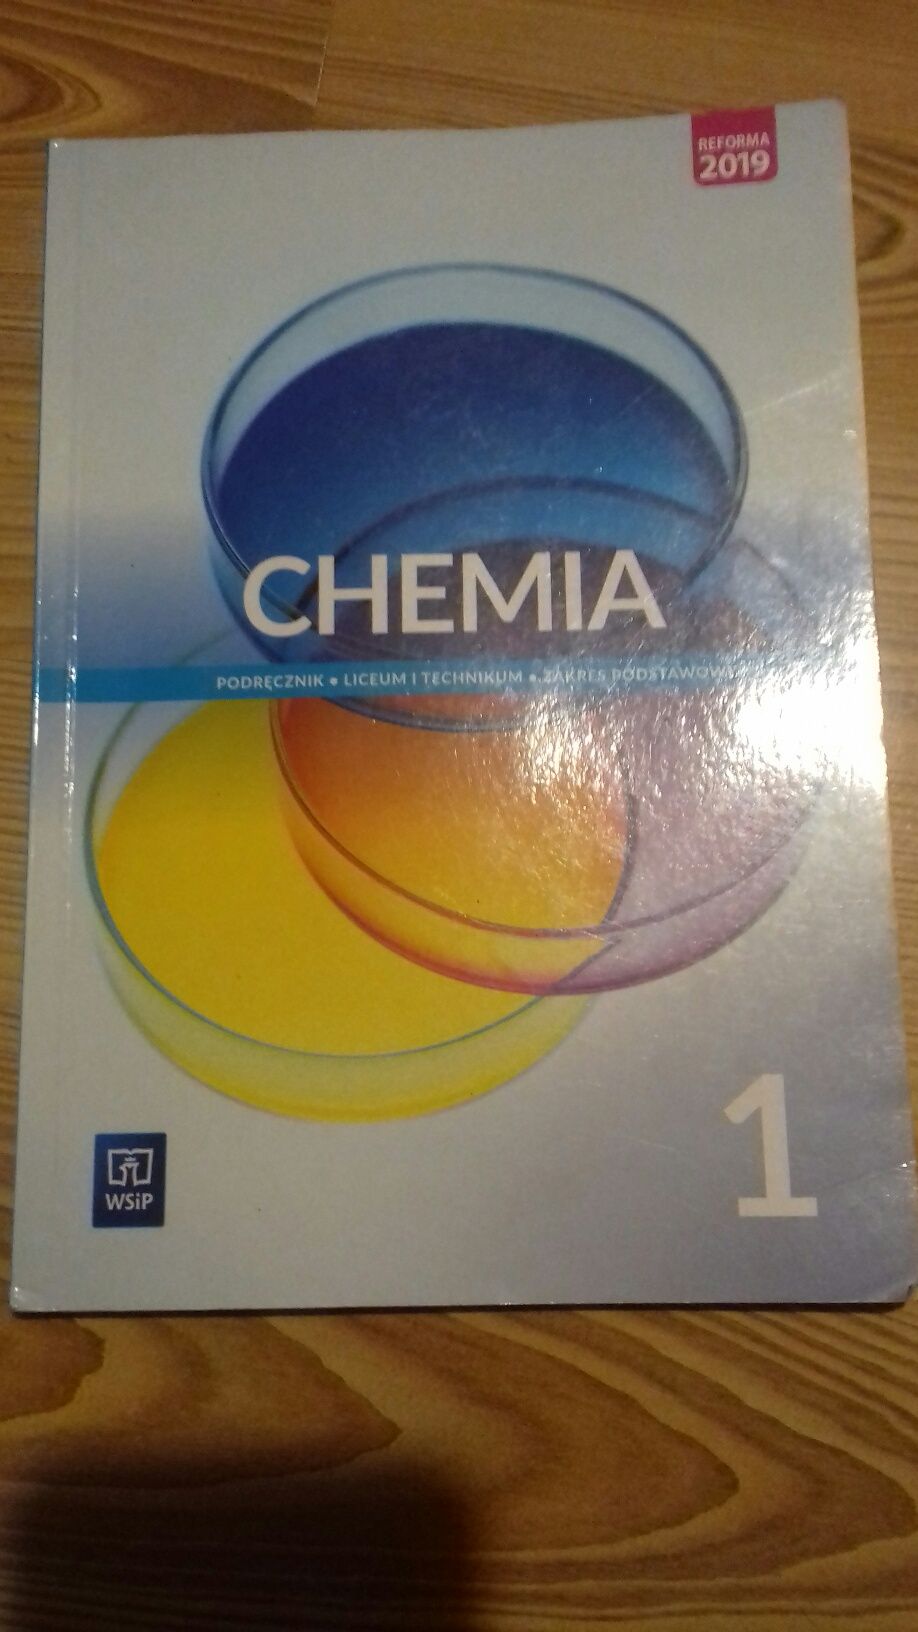 Chemia 1 podręcznik